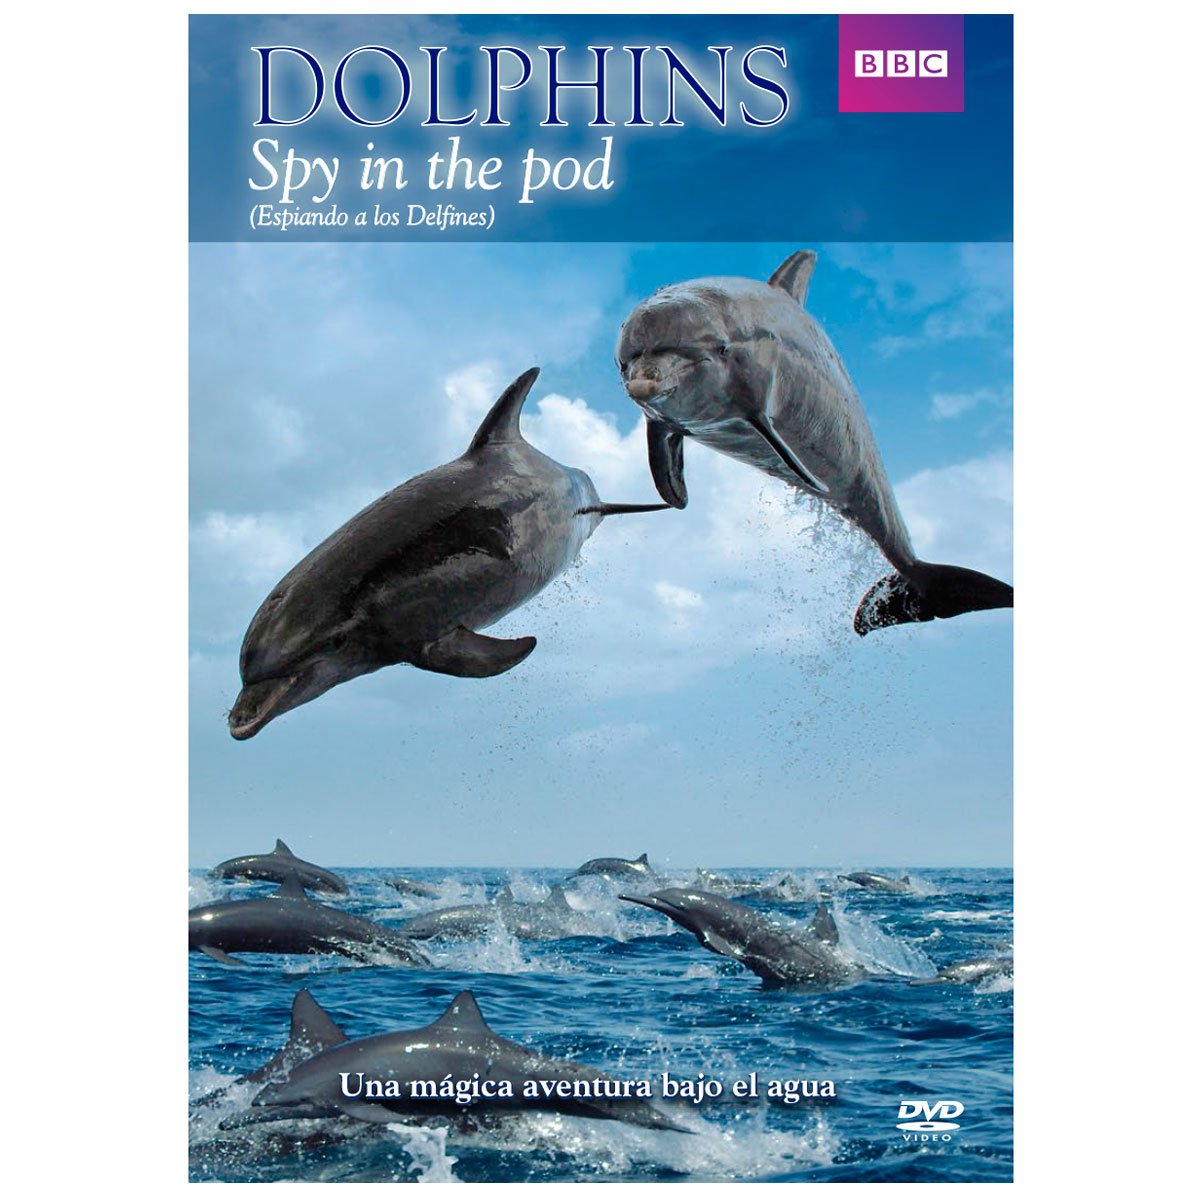 Espiando a los Delfines